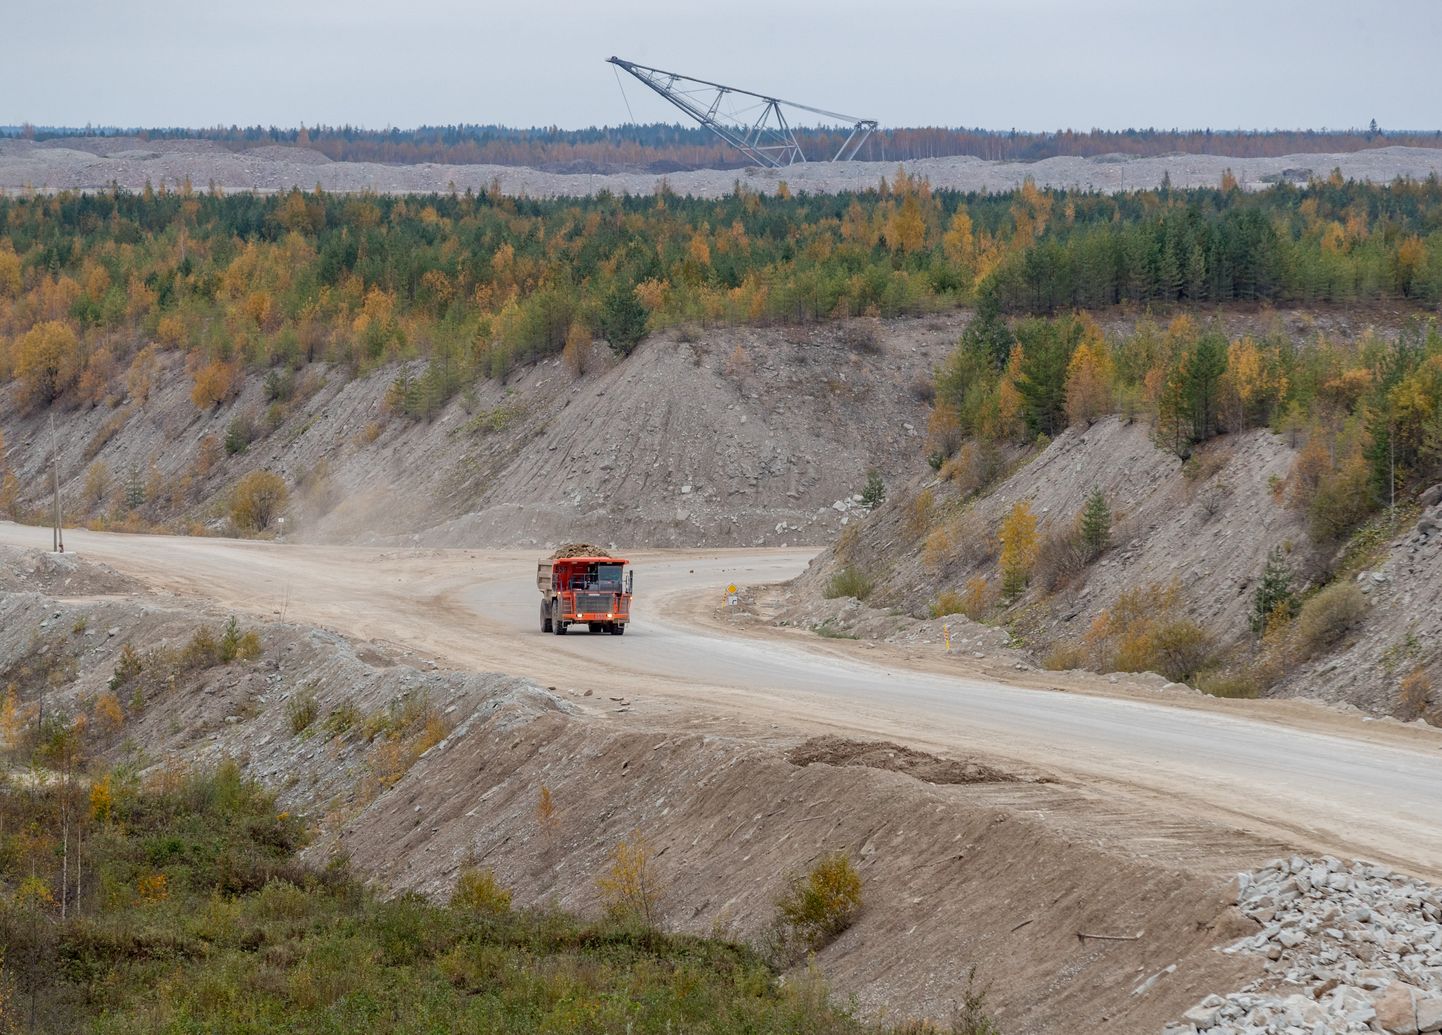 Eesti Energia müüb välja umbes 300 000 tonni põlevkivituhka aastas, mis on aga kõigest kaks kuni neli protsenti kogu tekkinud põlevkivituhast.